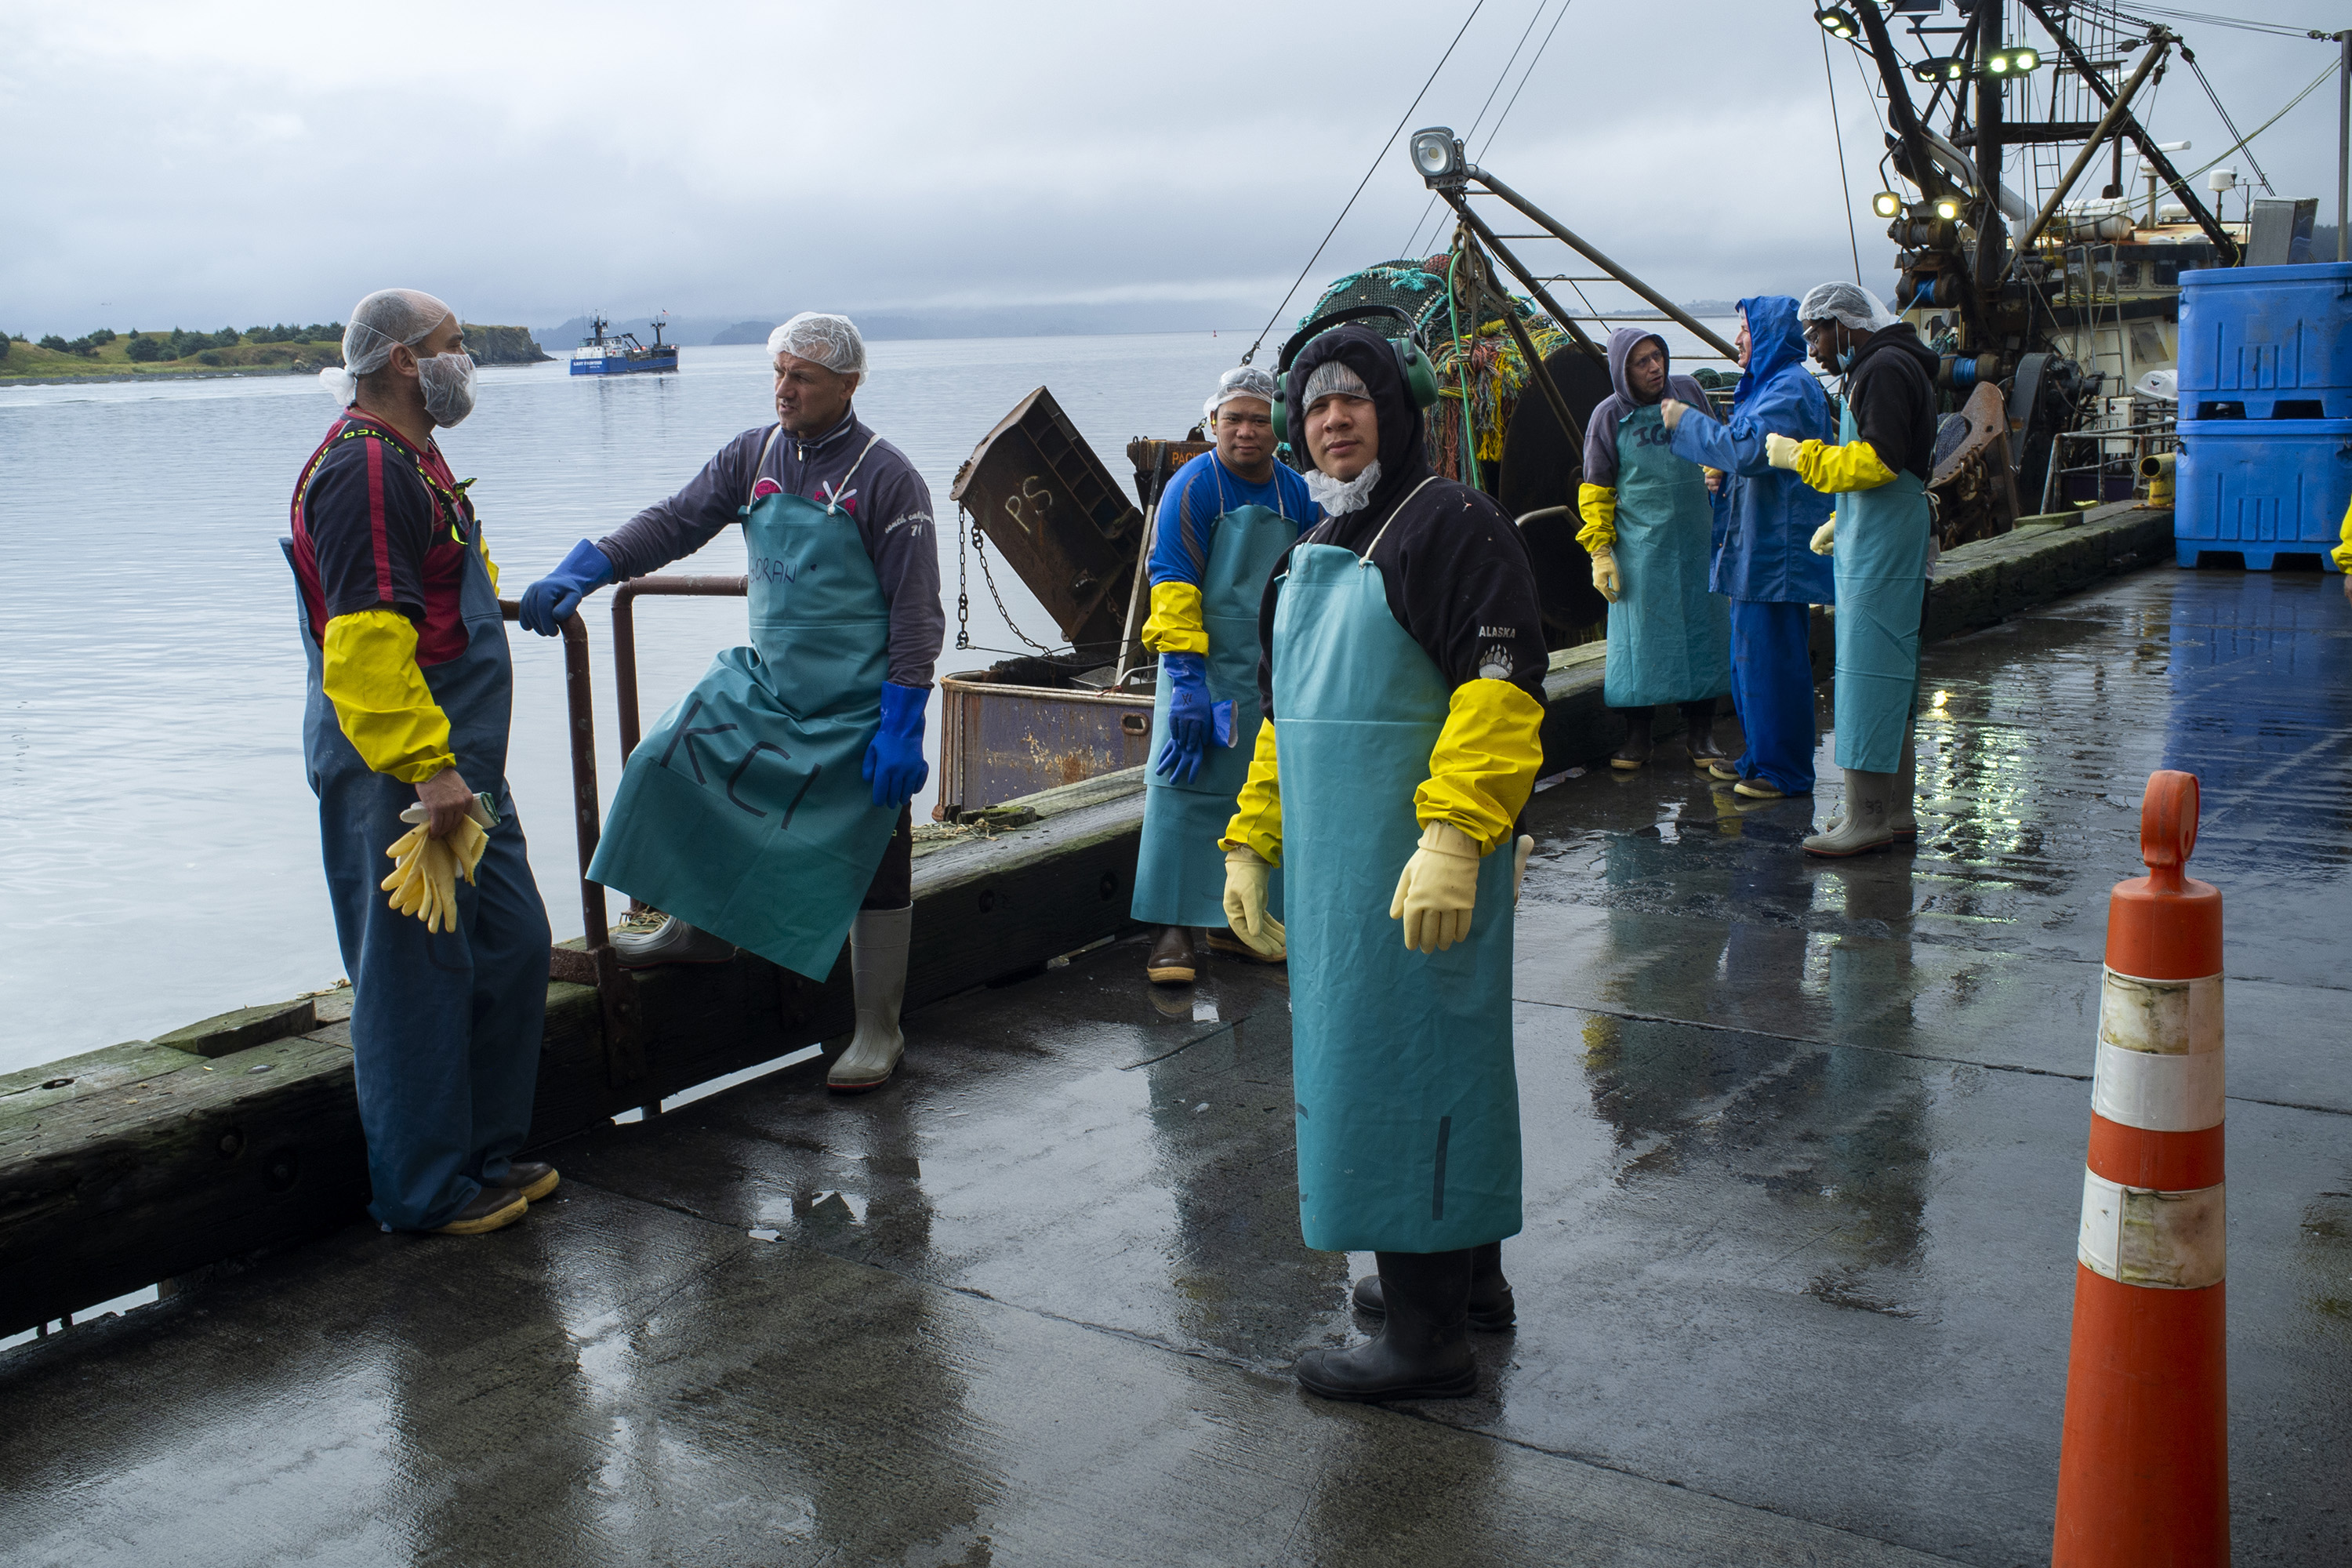 Radnici fabrike za preradu ribe u Kidiaku stoje na doku ispred fabriÄkog pogona za vreme kratke pauze